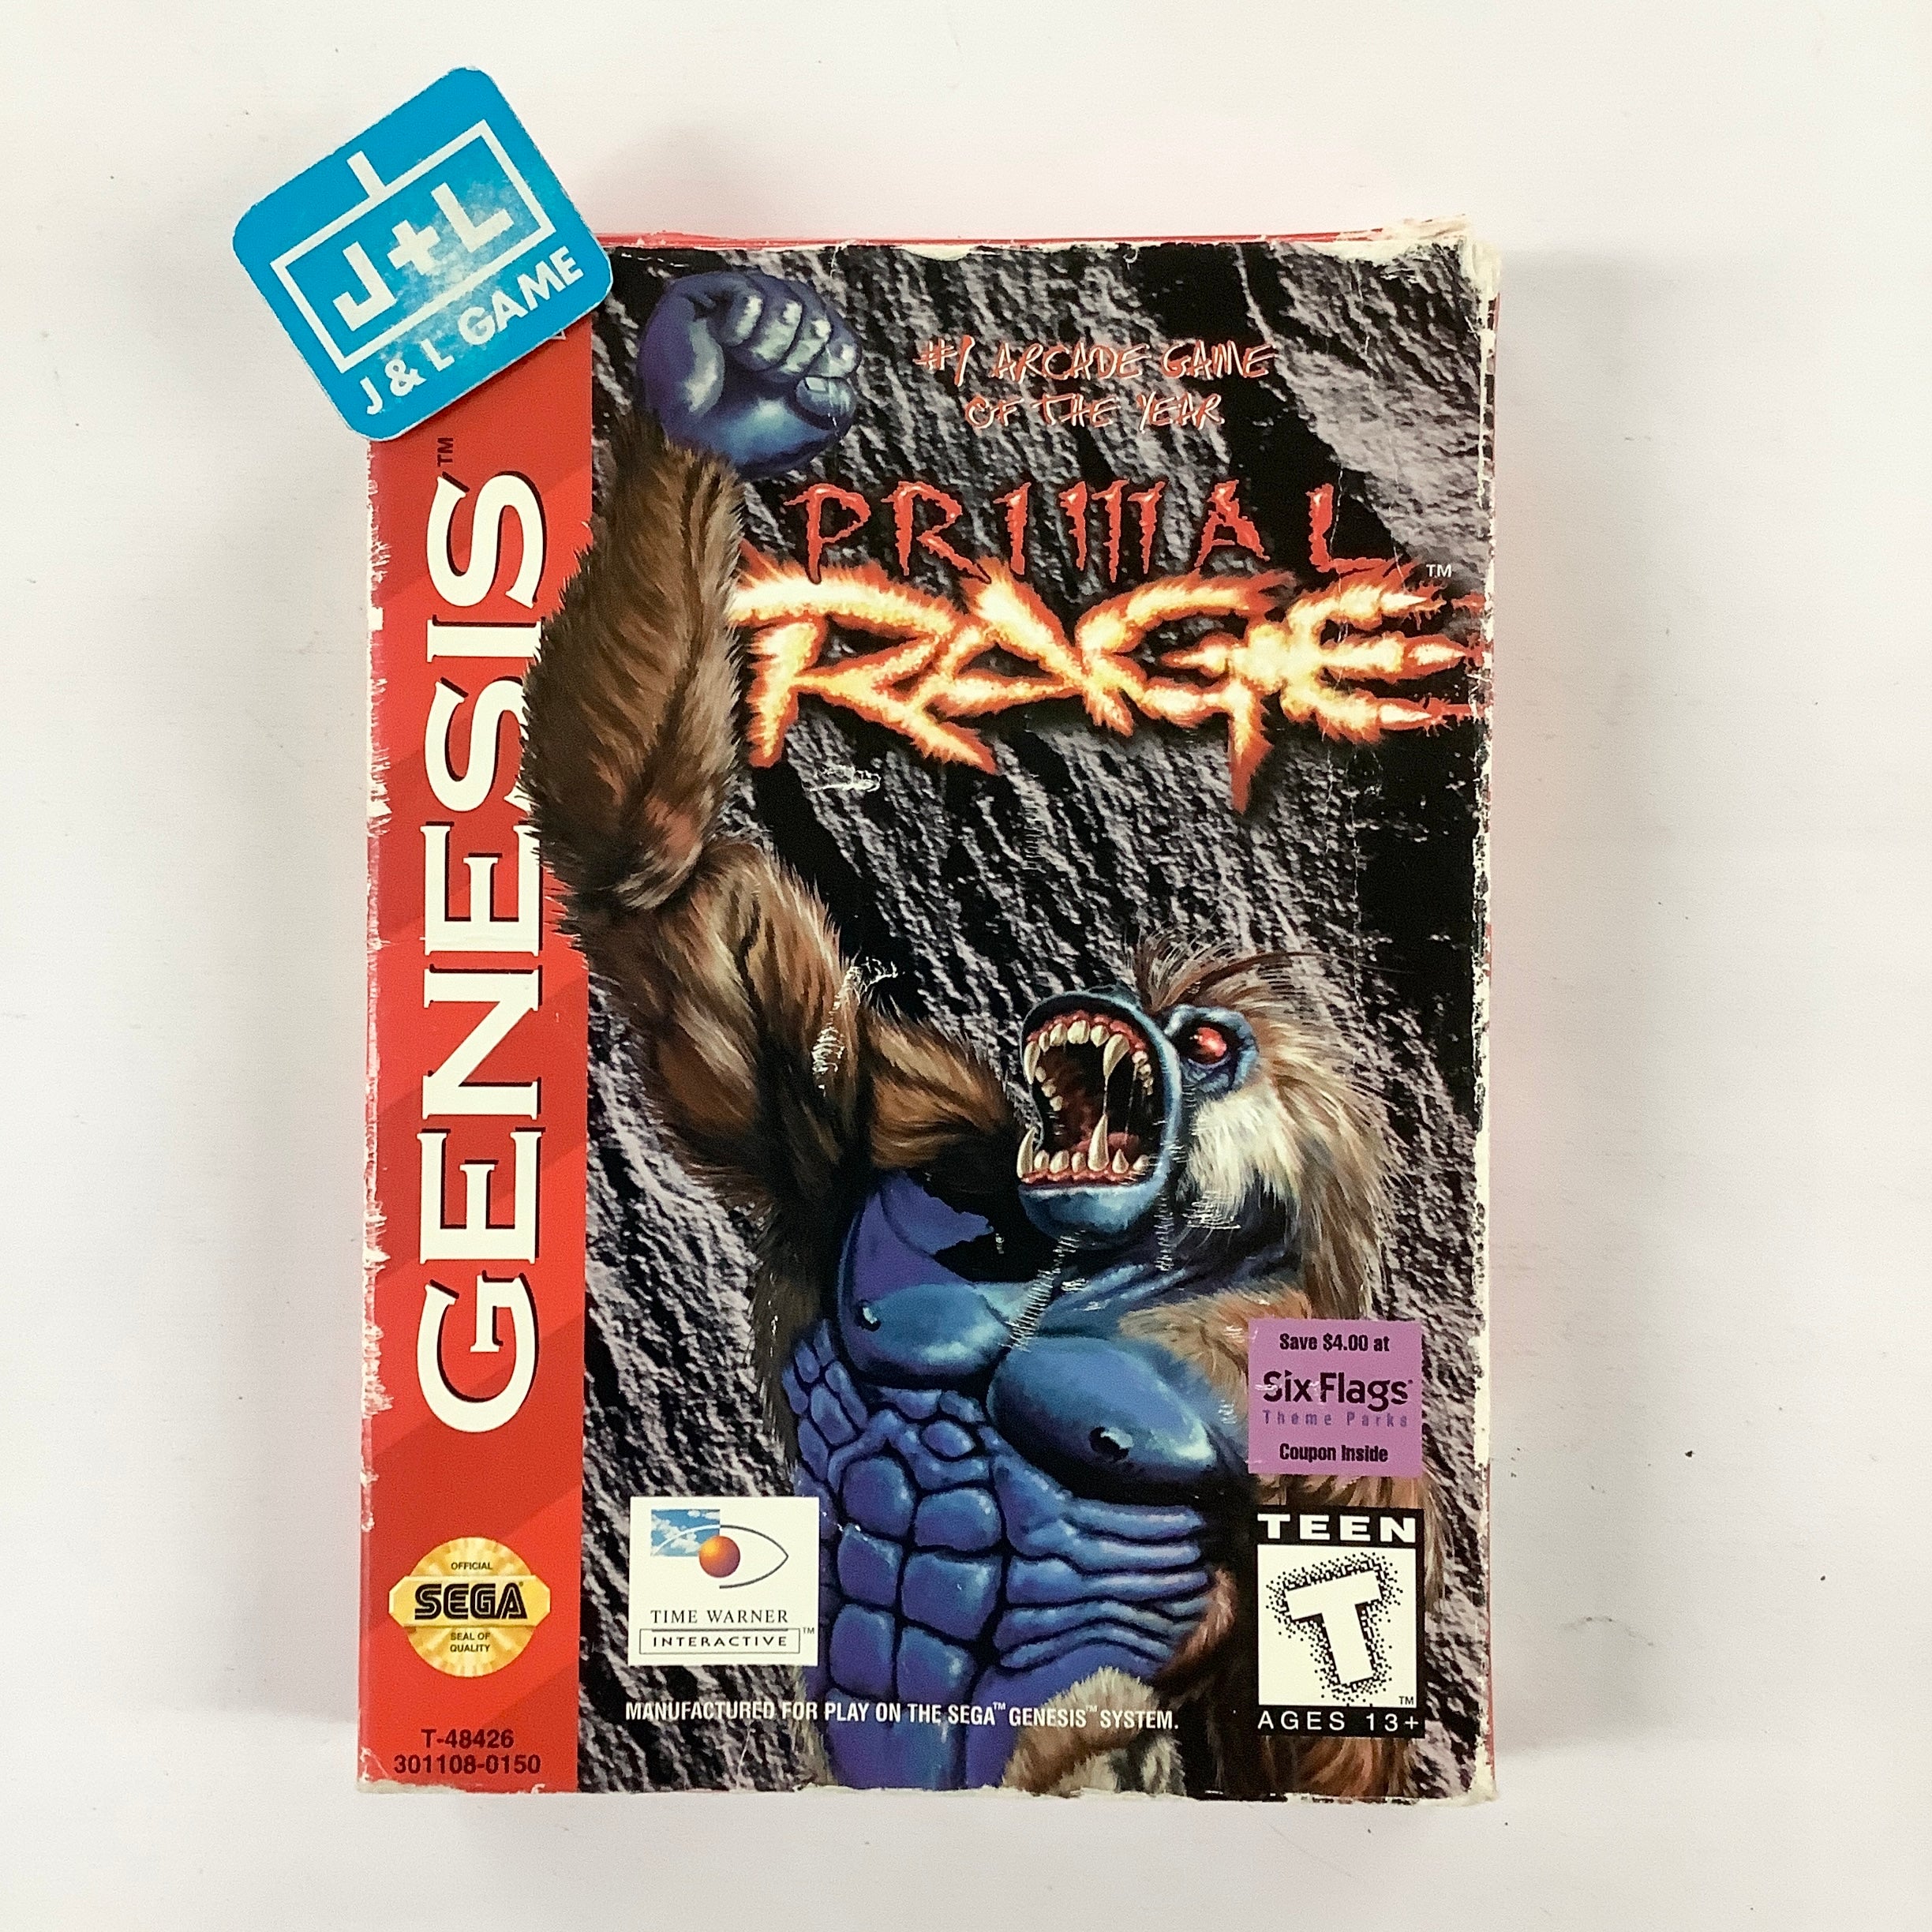 Primal Rage - (SG) SEGA Genesis [Pre-Owned] Video Games Time Warner Interactive   